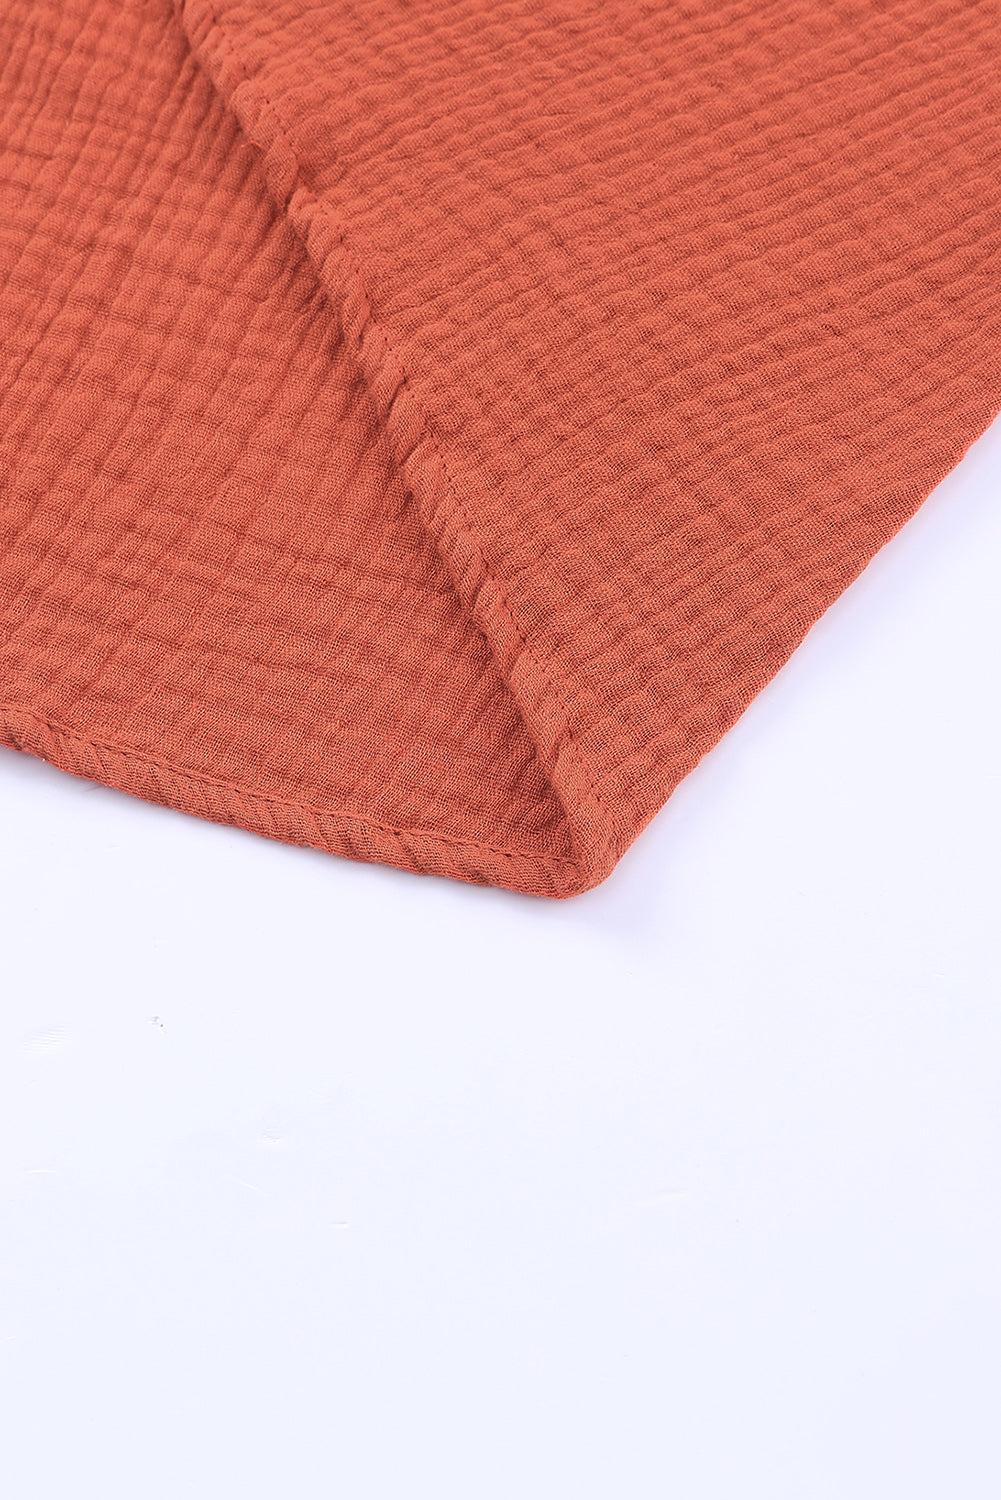 Robe nuisette marron texturée en crochet sur le devant